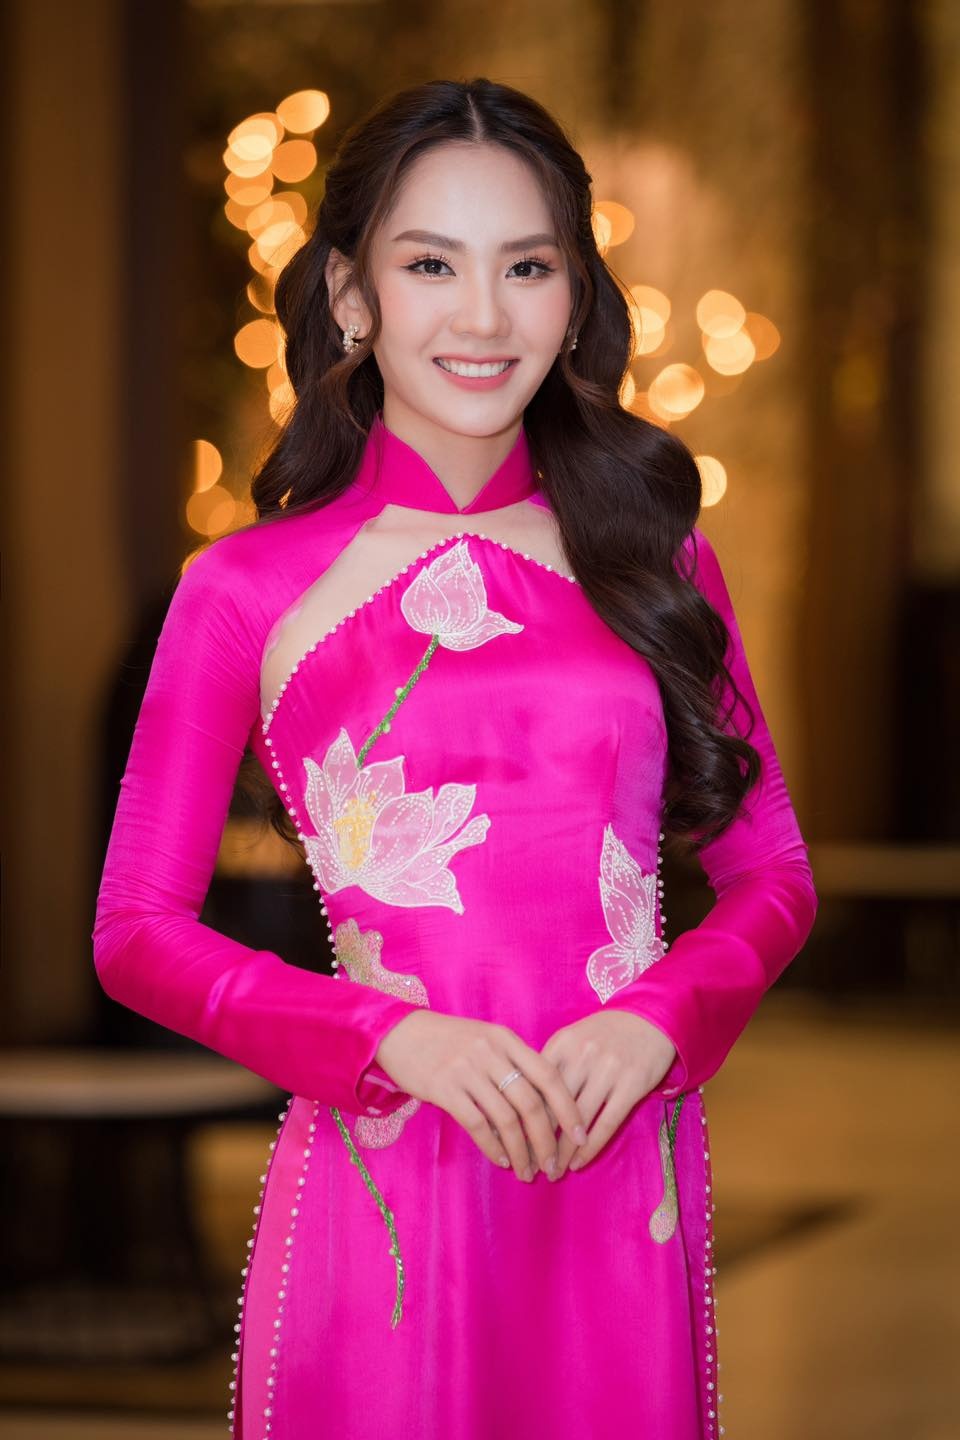 Hoa hậu Mai Phương: Cuộc sống của hoa hậu không phải 'màu hồng' - ảnh 3